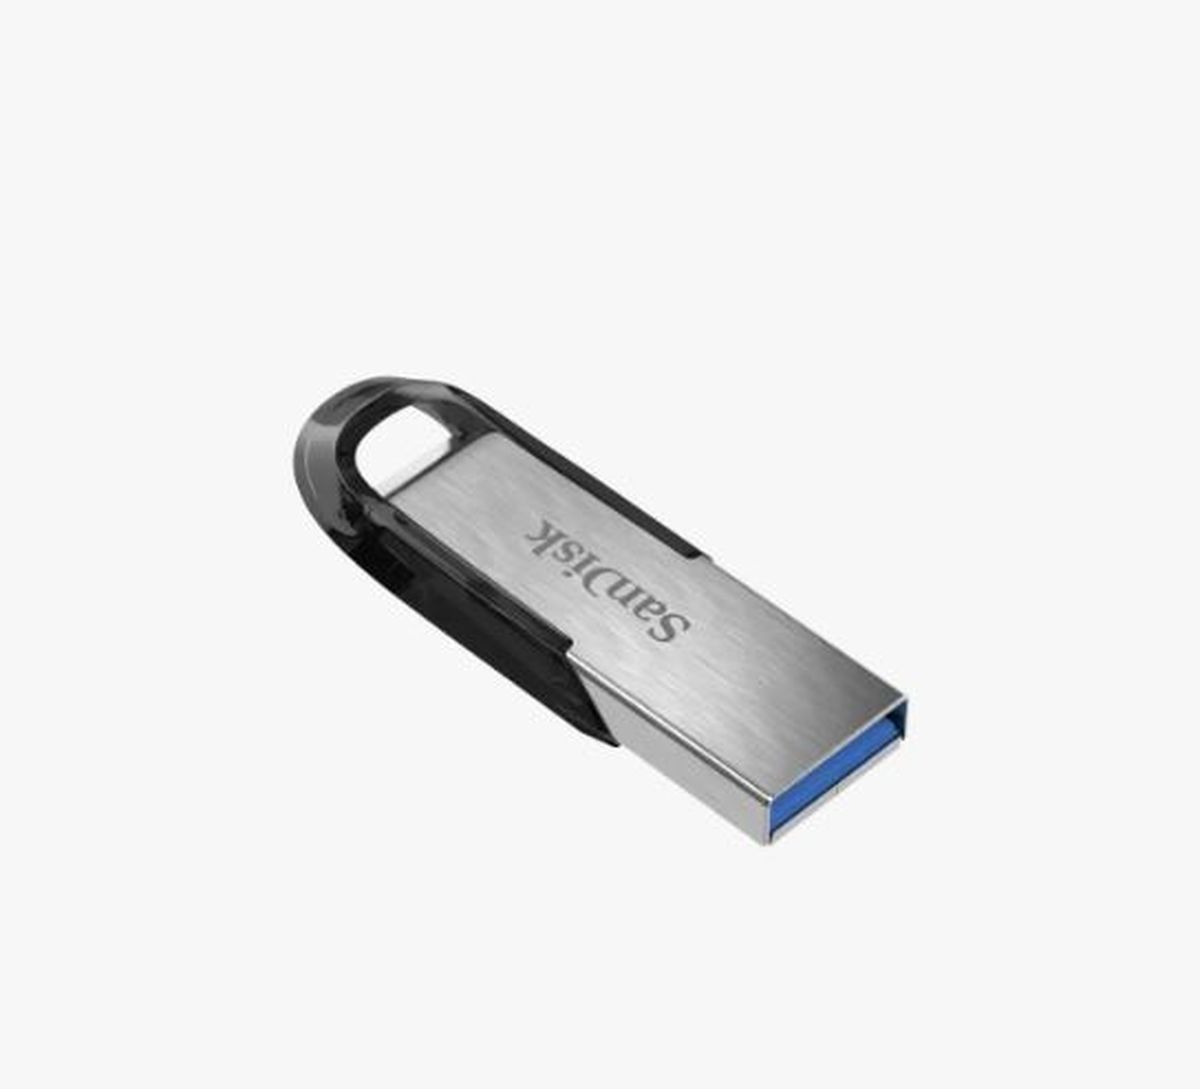 SanDisk Ultra Flair™ USB 3.0 - 16Go